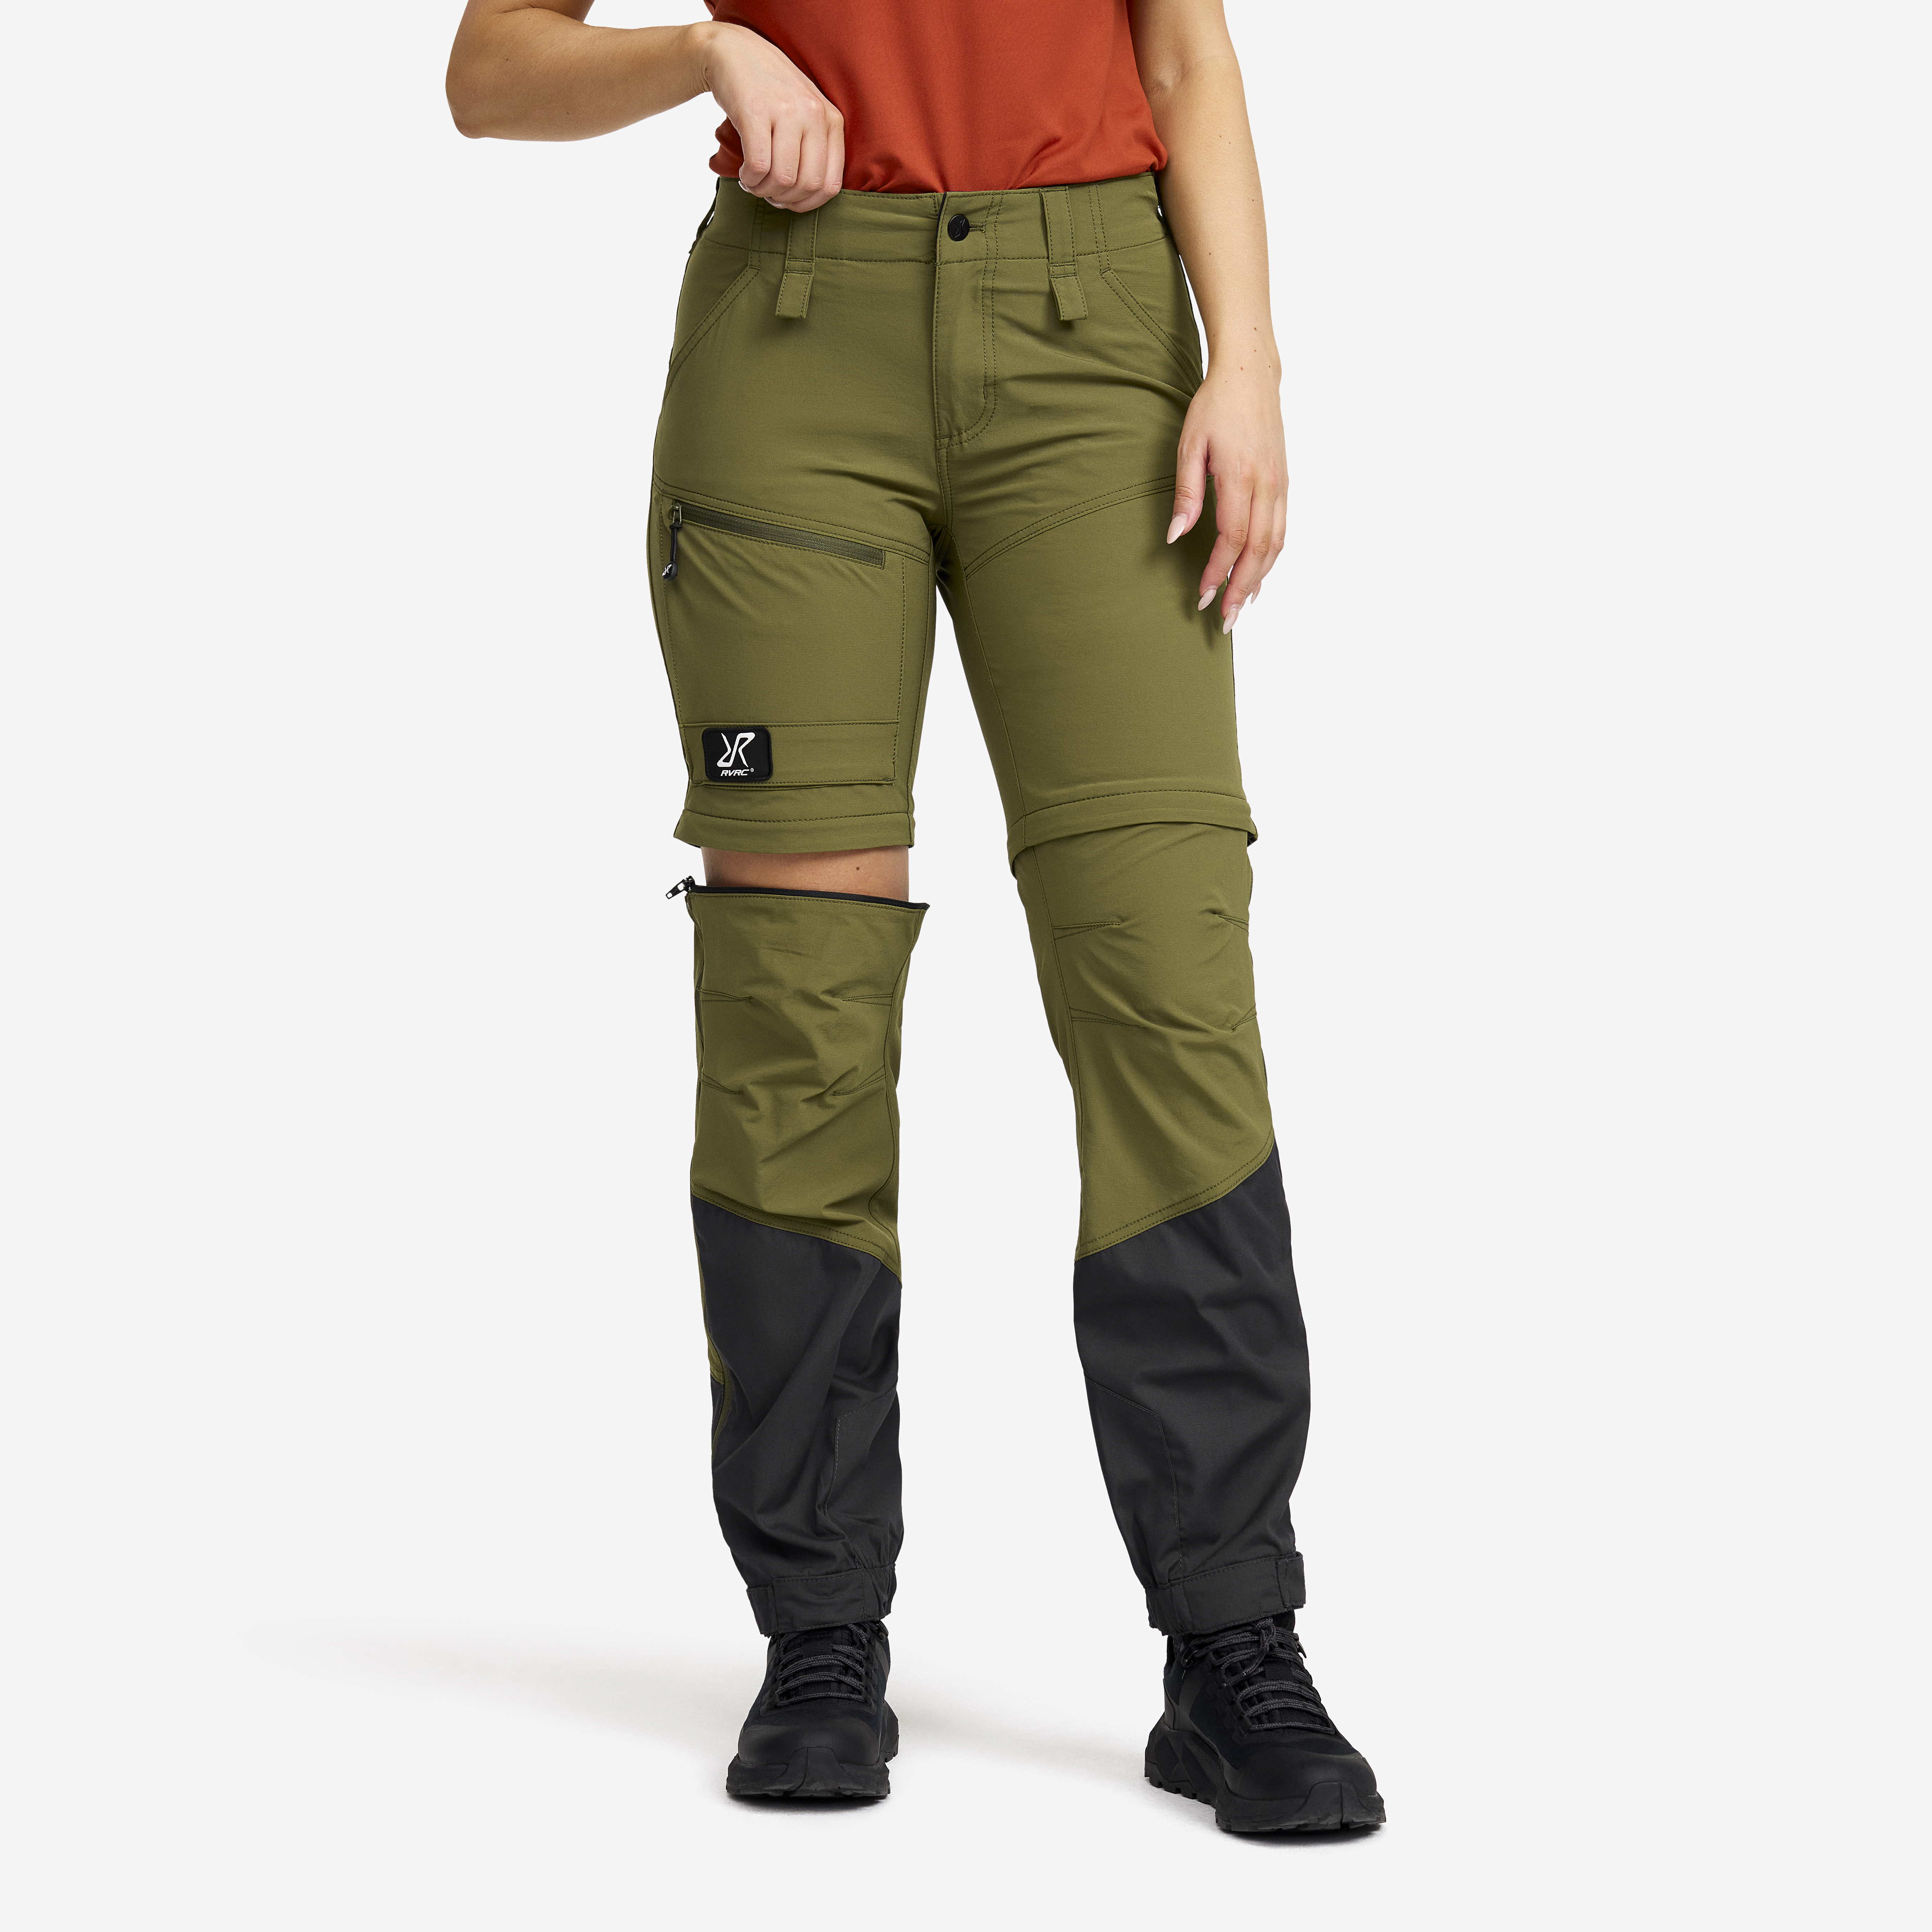 Range Pro Zip-off Pants  Burnt Olive/Anthracite Femme